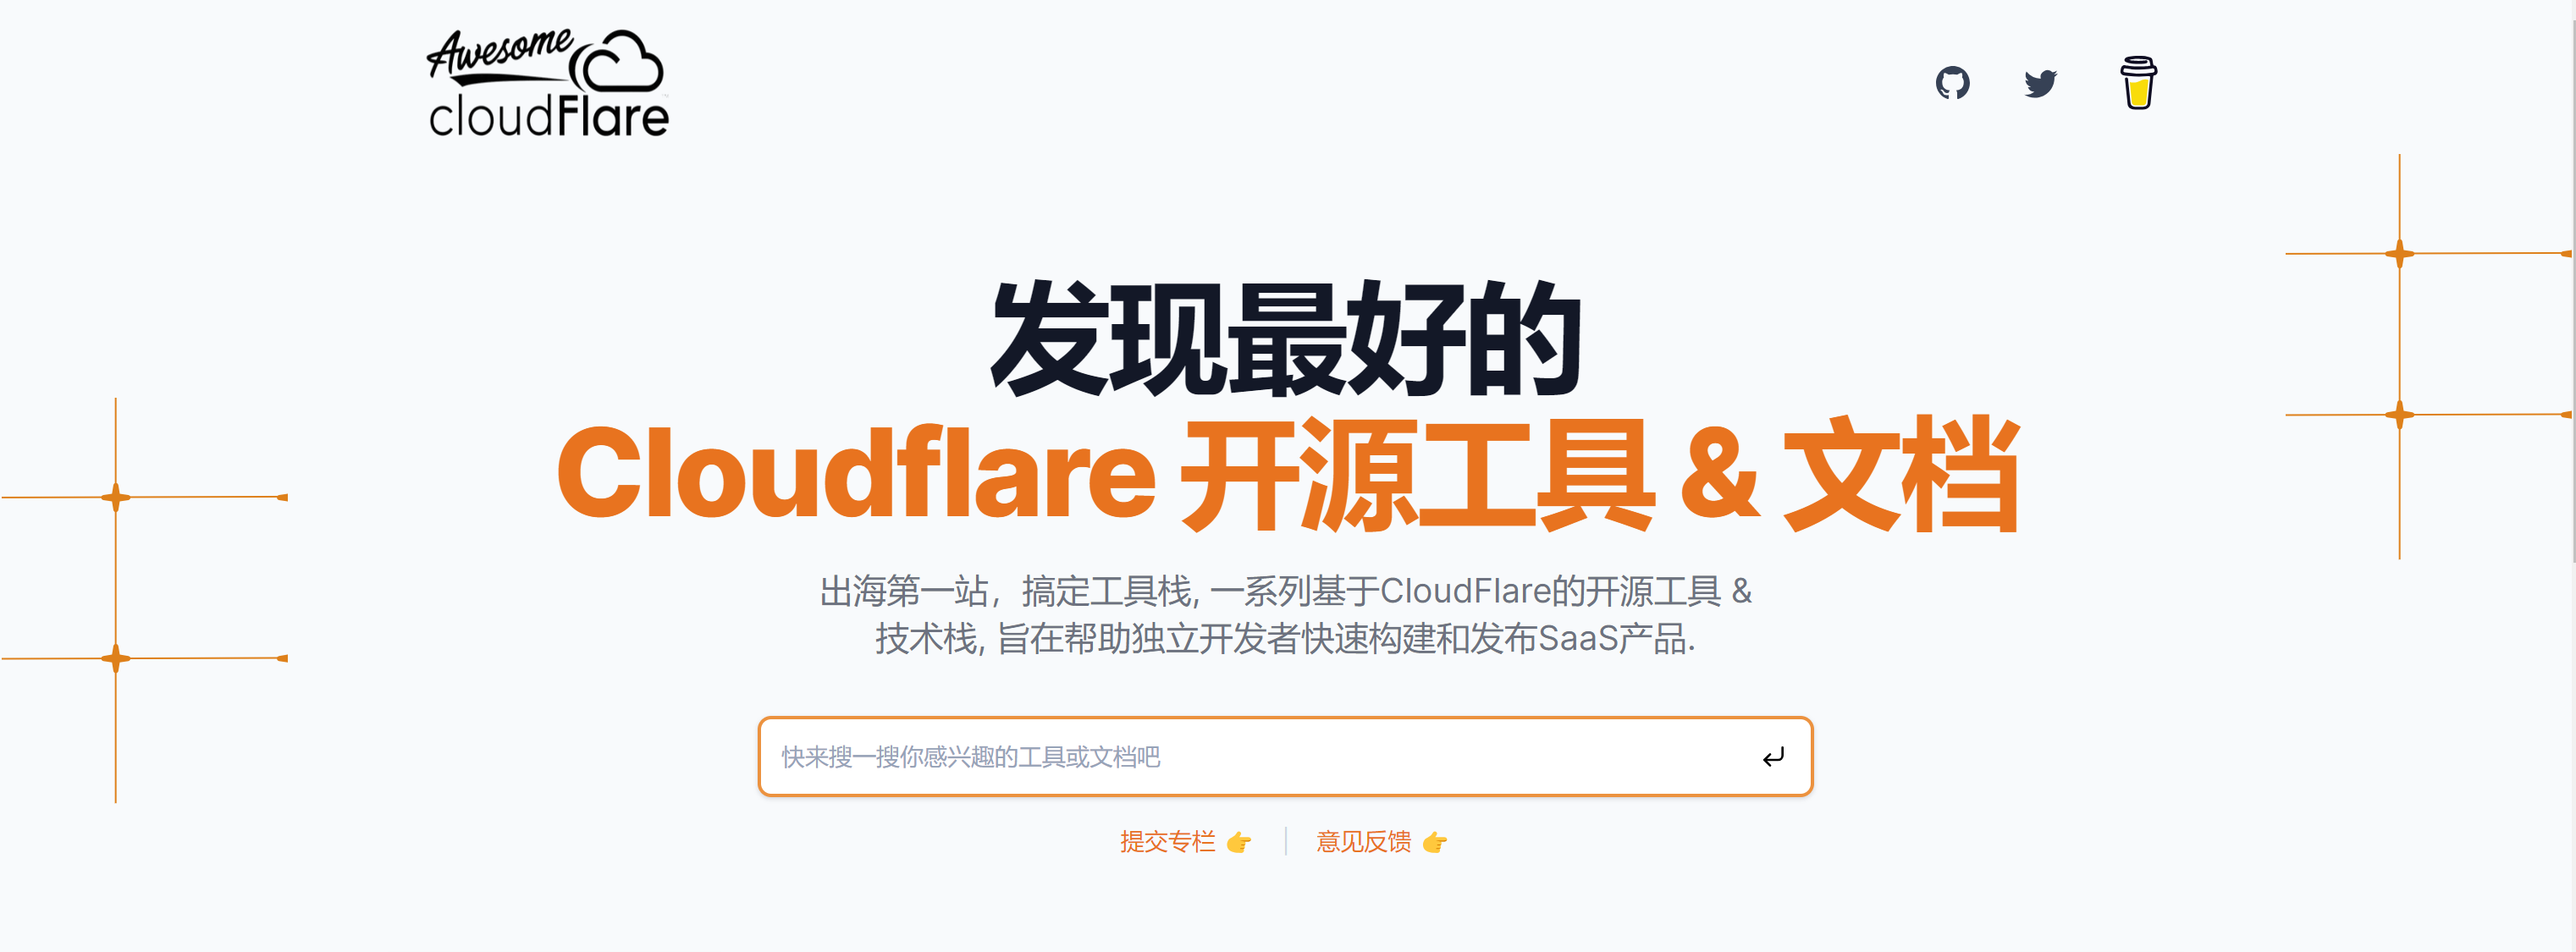 精选 Cloudflare 开源工具 & 文档 - Awesome Cloudflare-大海资源库